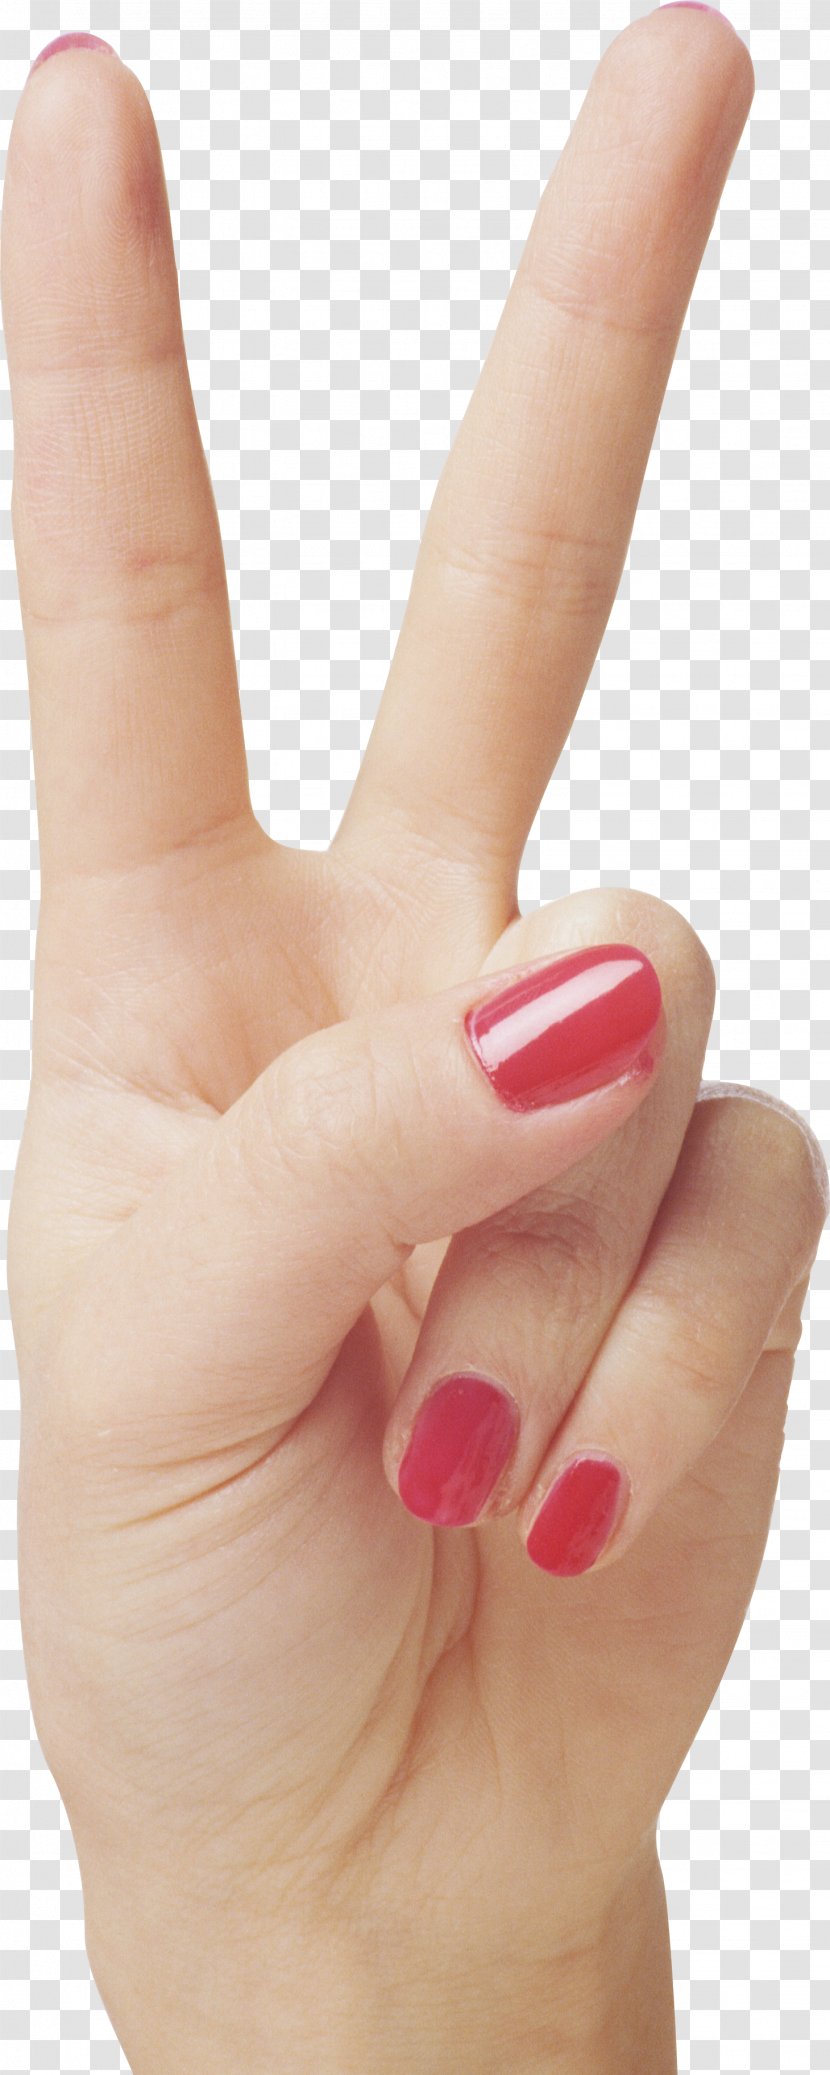 Hand V Sign Gesture - Model - Hands , Image Free Transparent PNG